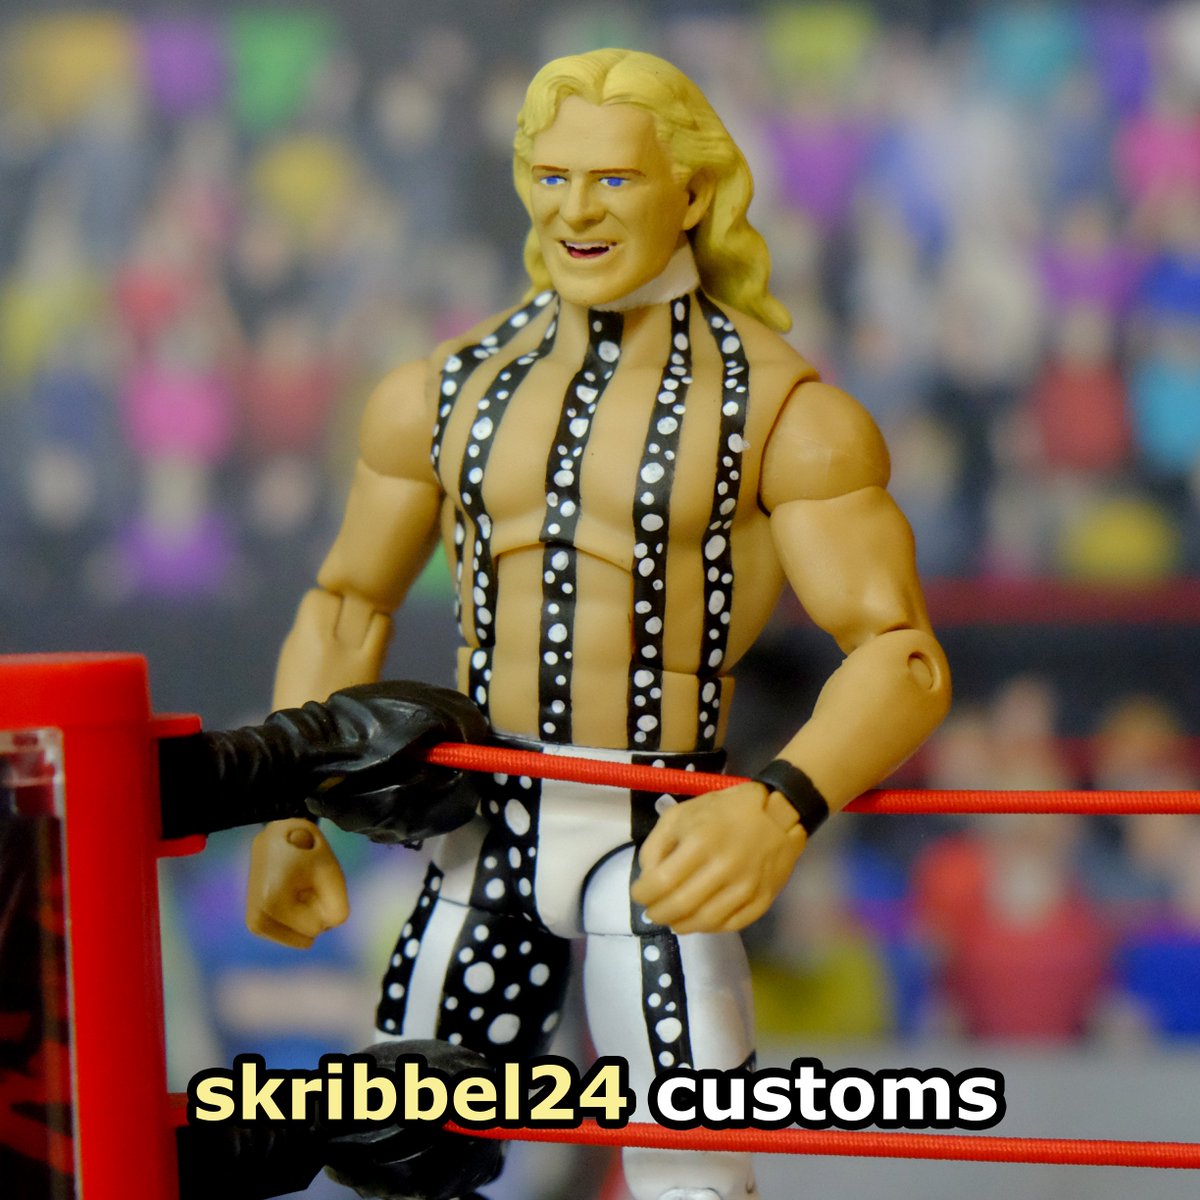 Mattel elite custom of @RealJeffJarrett from his memorable WWF run. Swipe ⬅️ for more pics. DM me for (serious) inquiries!